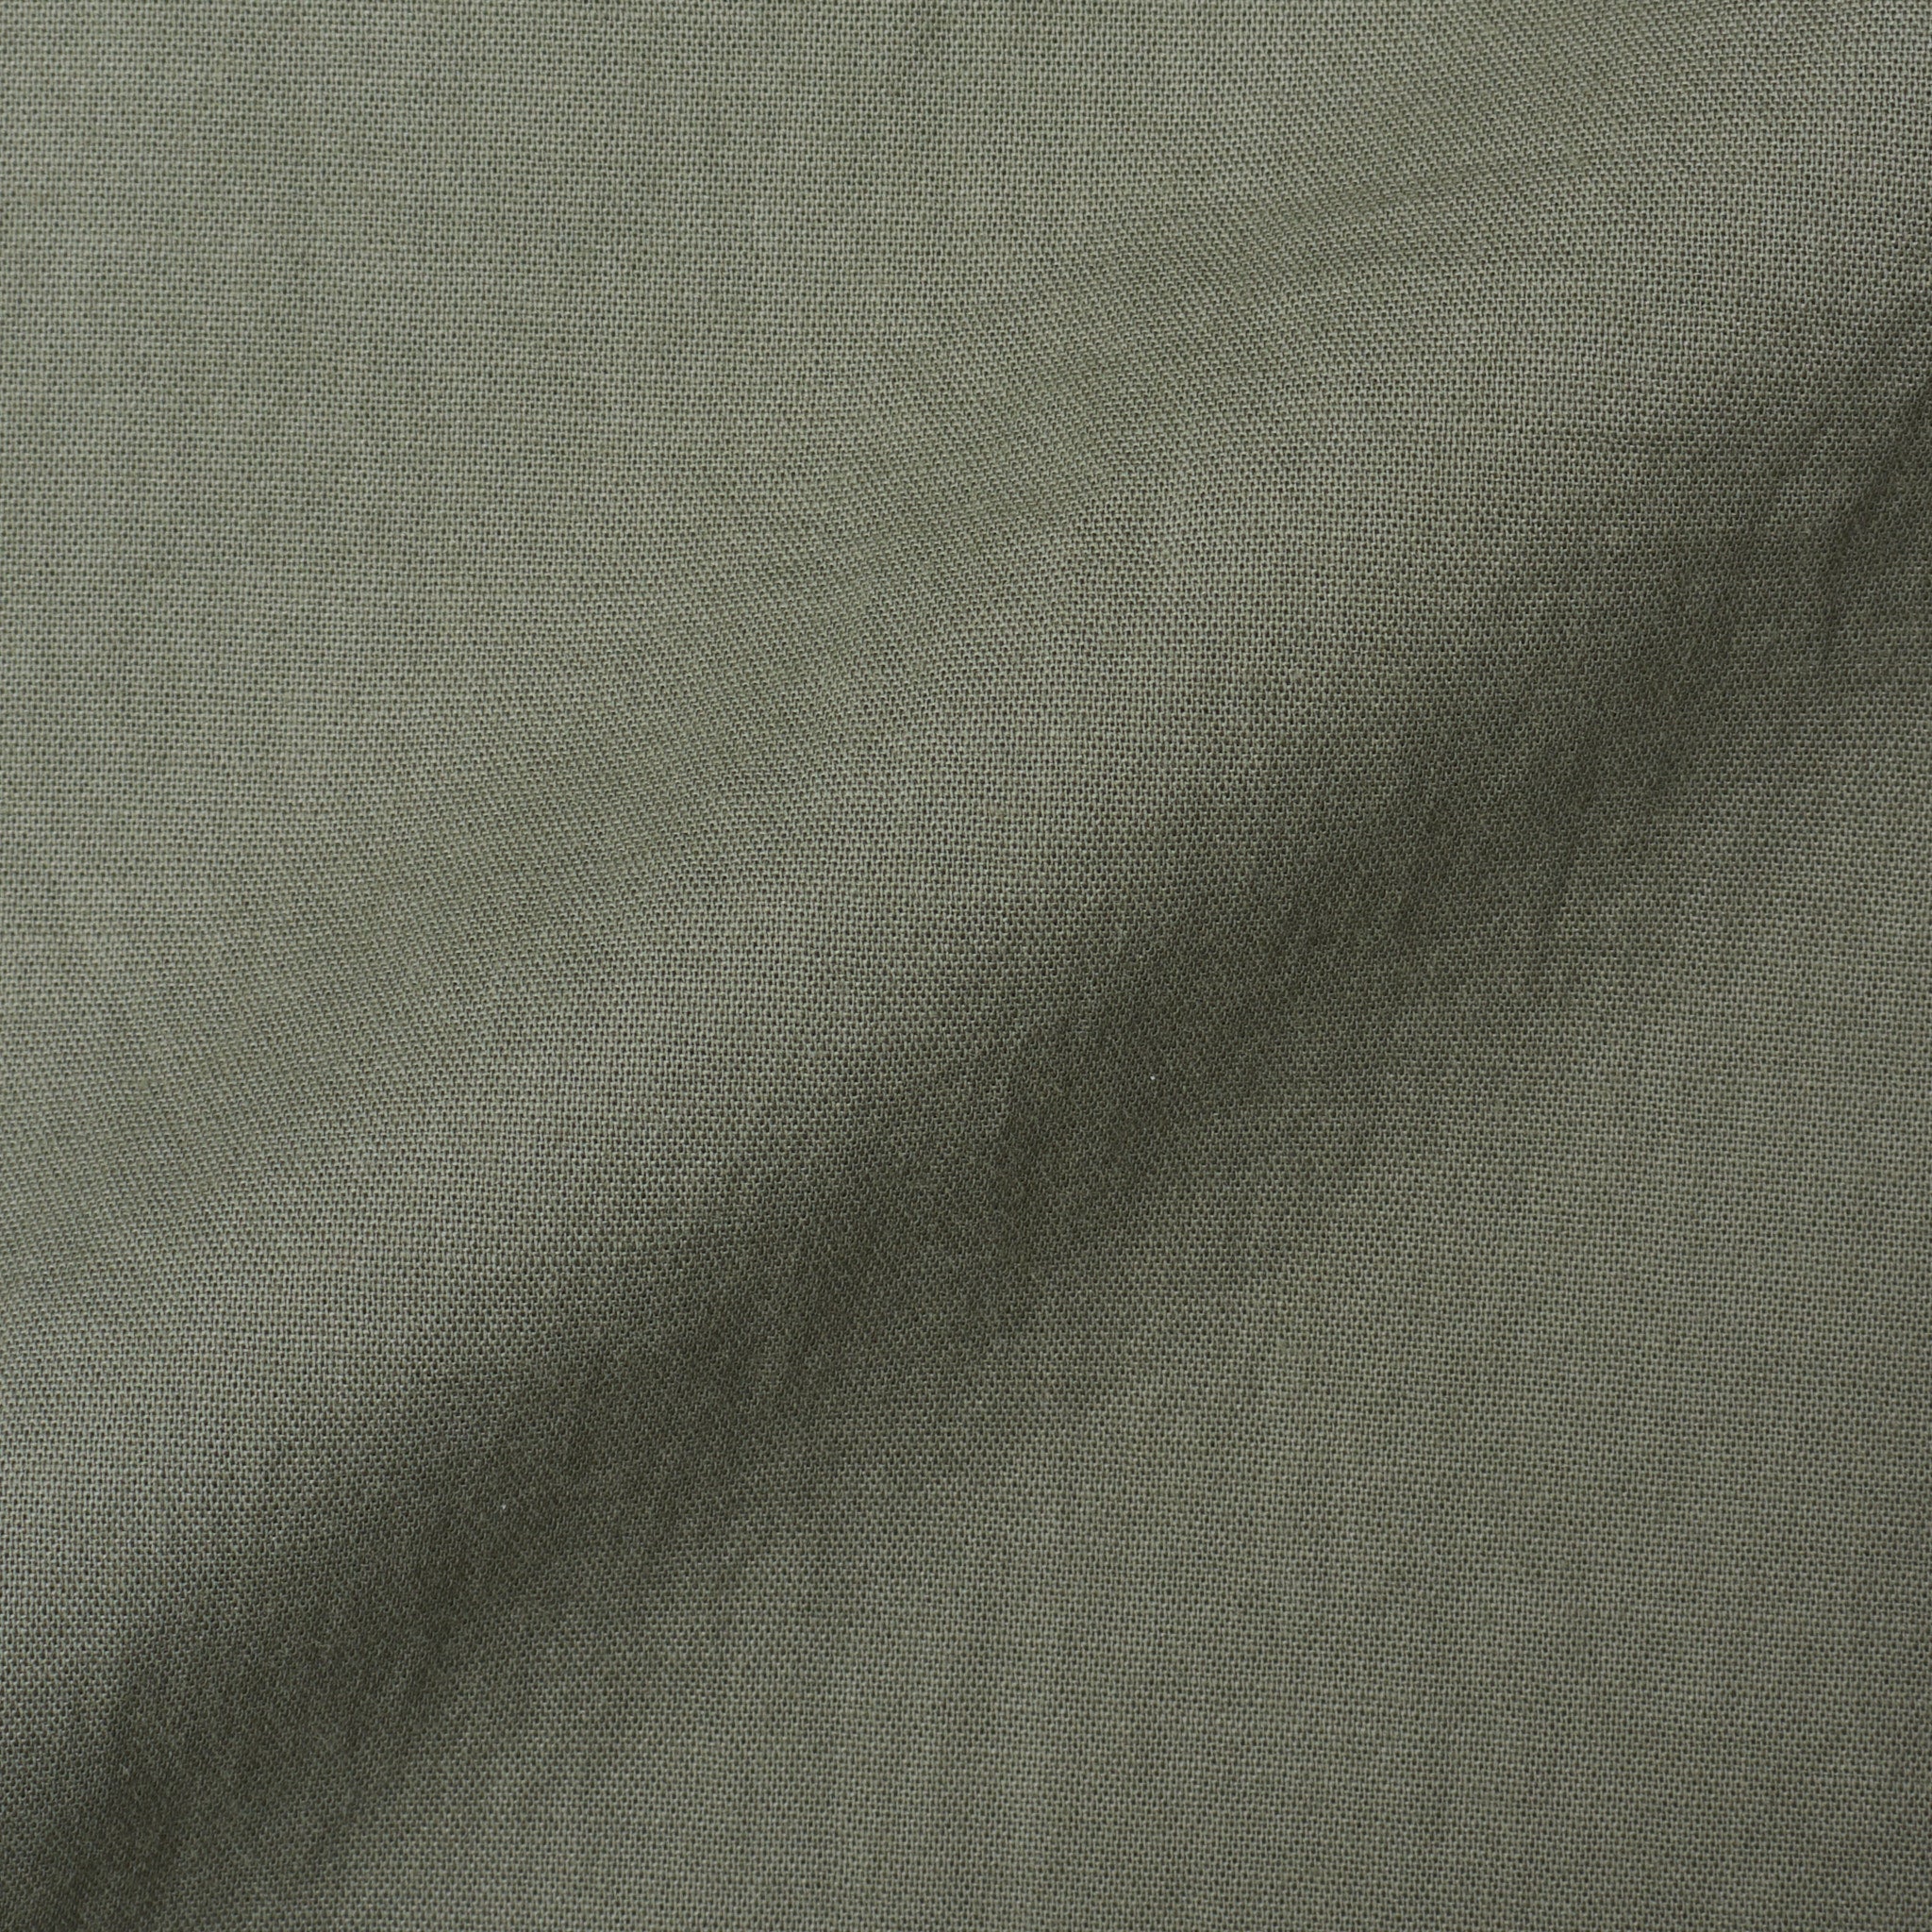 FEDELI Olive Panamino Cotton Long Sleeve Casual Shirt EU 43 NEW US 17 FEDELI